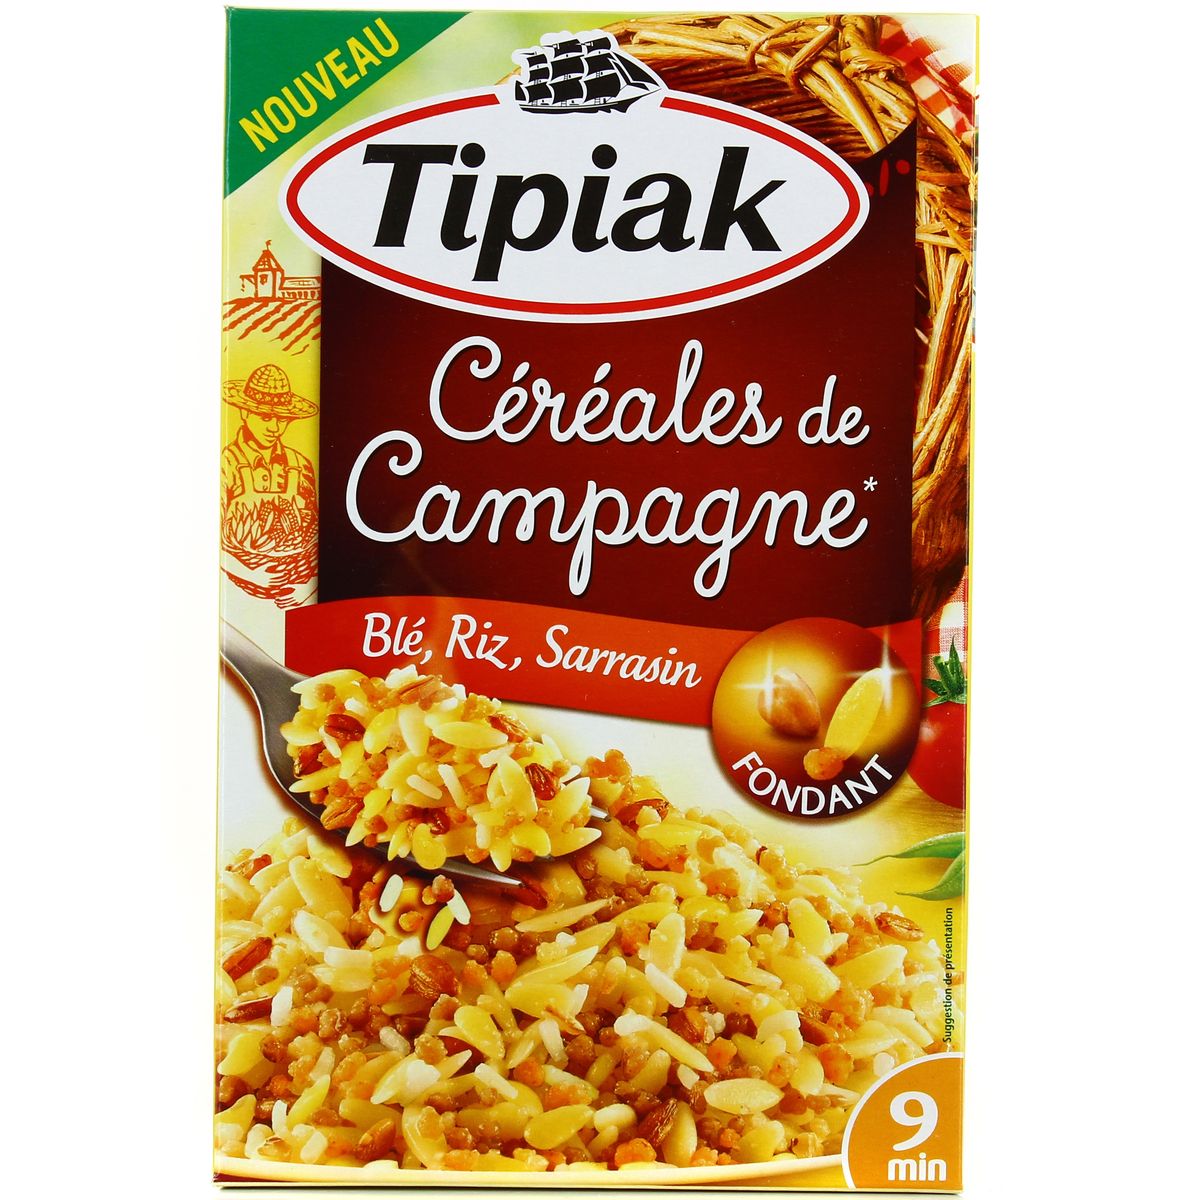 Céréales à l'indienne – Tipiak